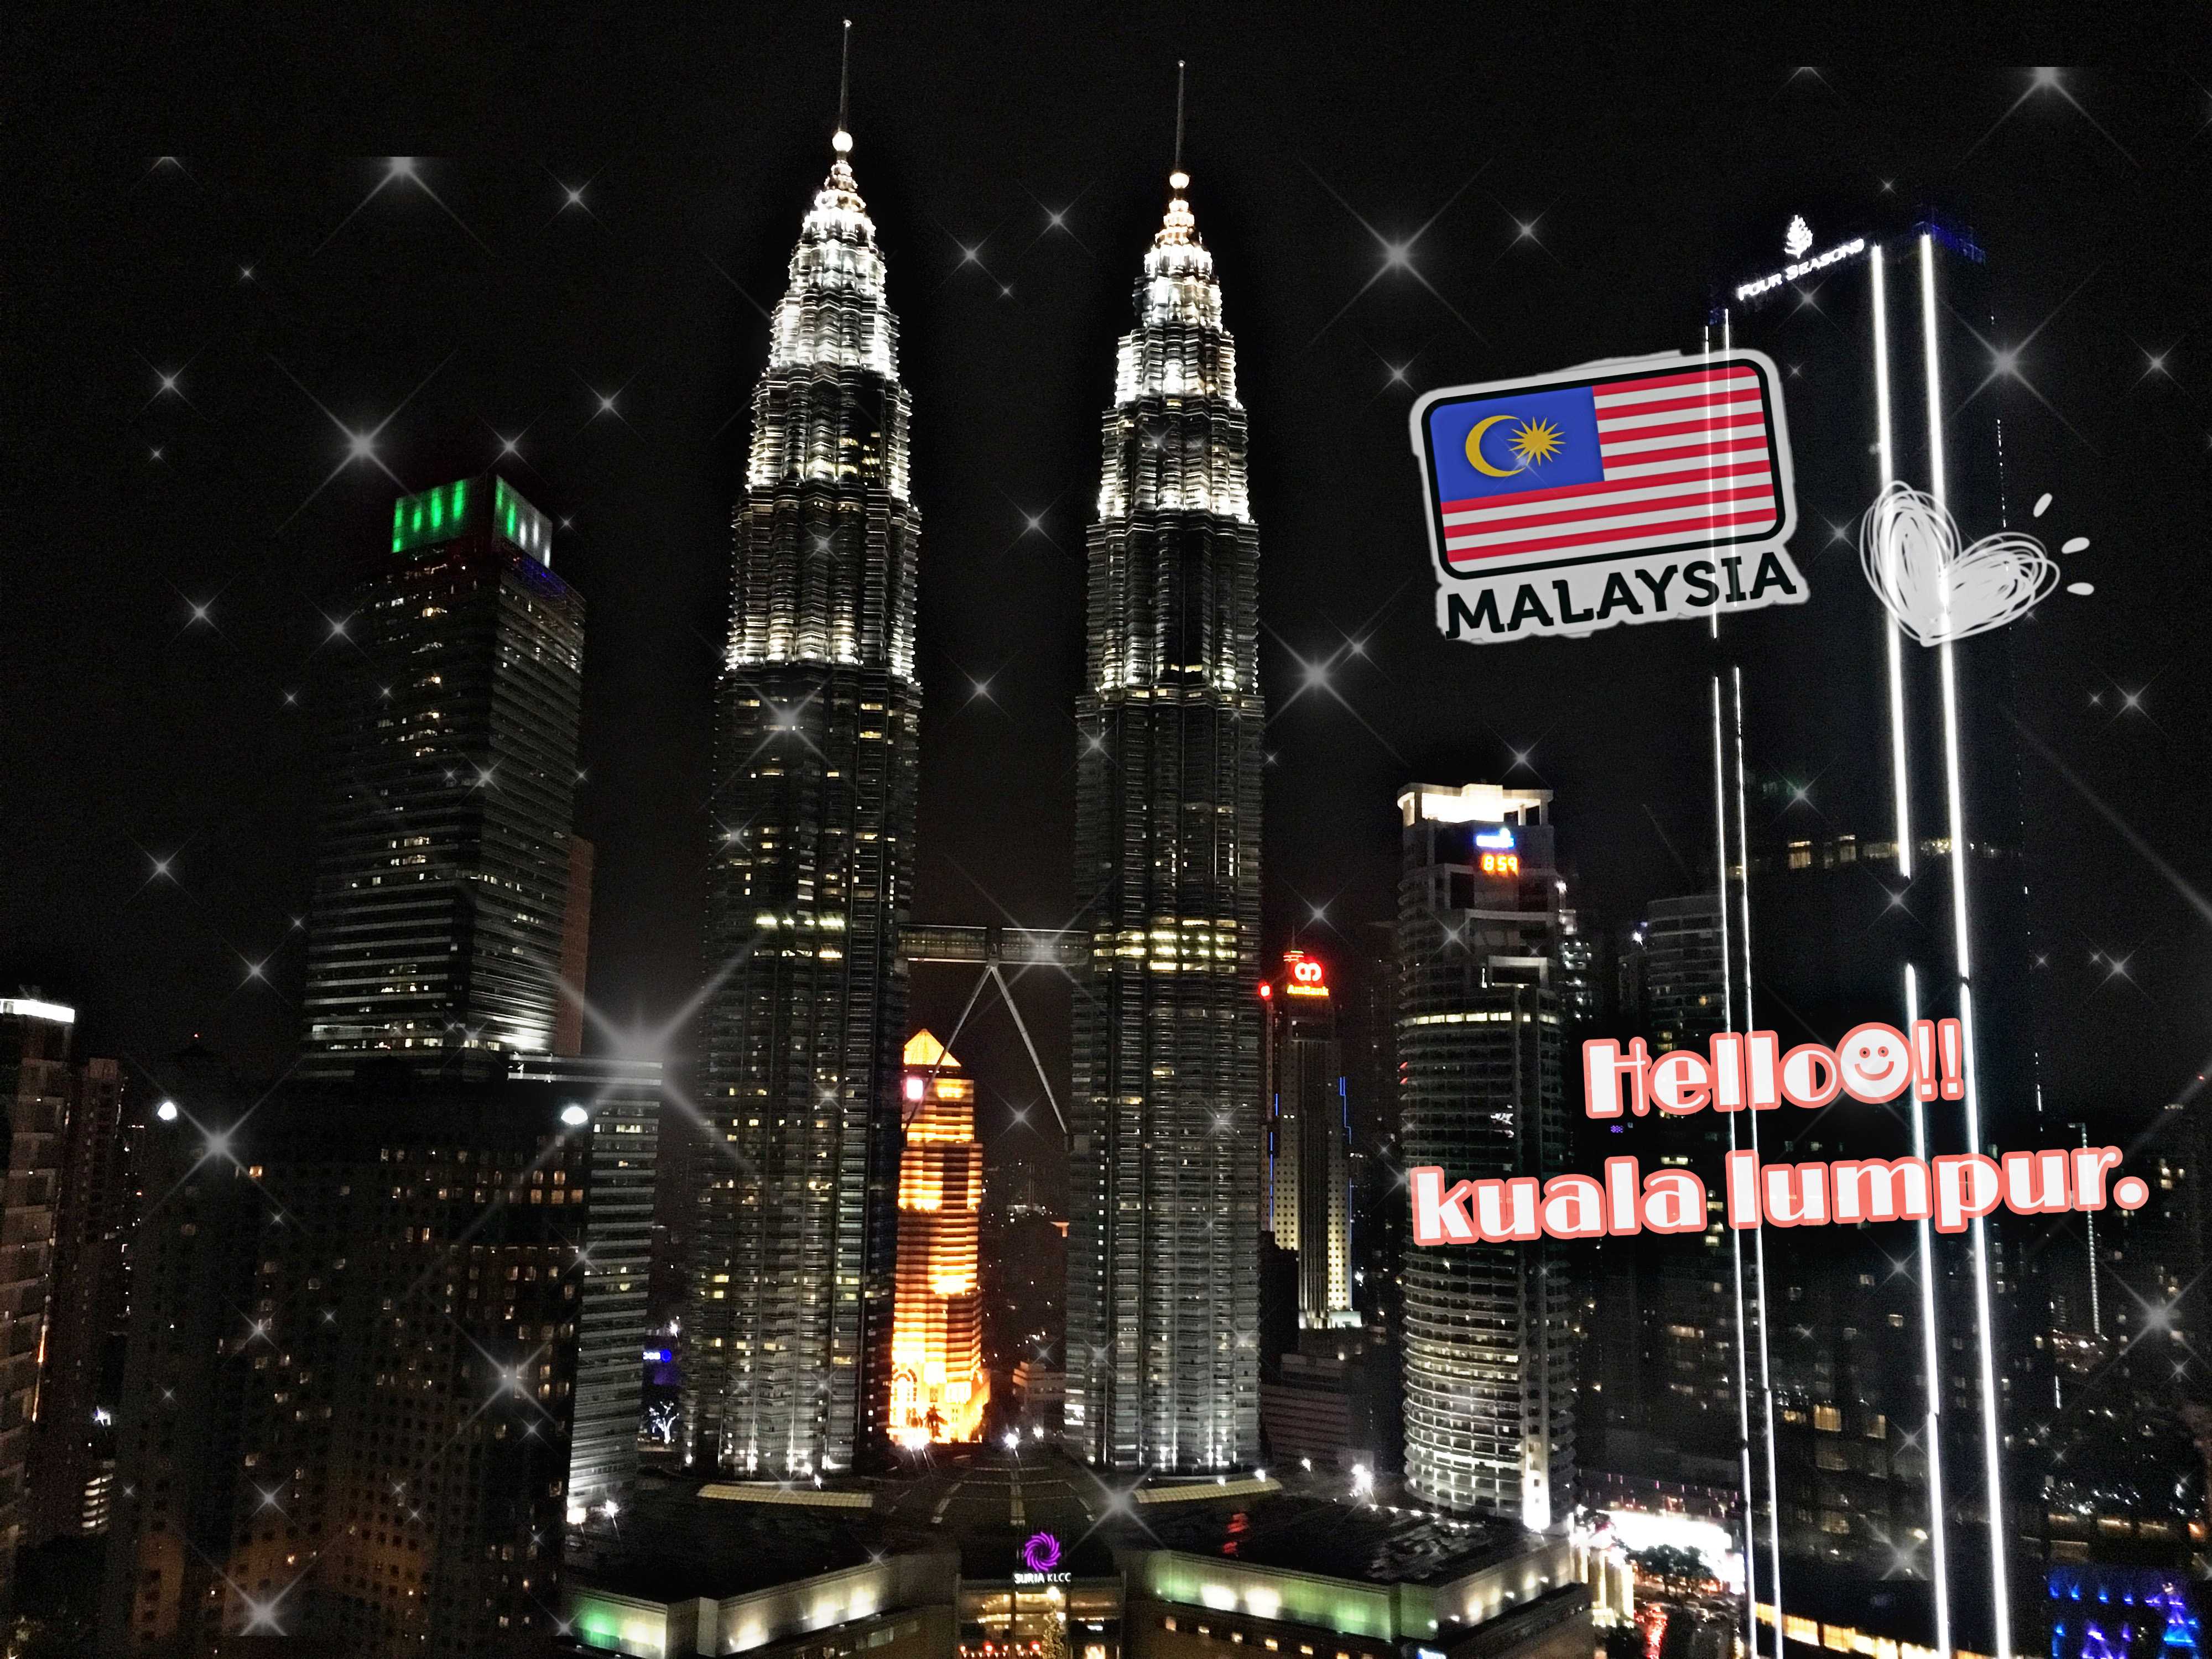 【子連れマレーシア滞在日記】 Hello☻‼︎ Kuala Lumpur.